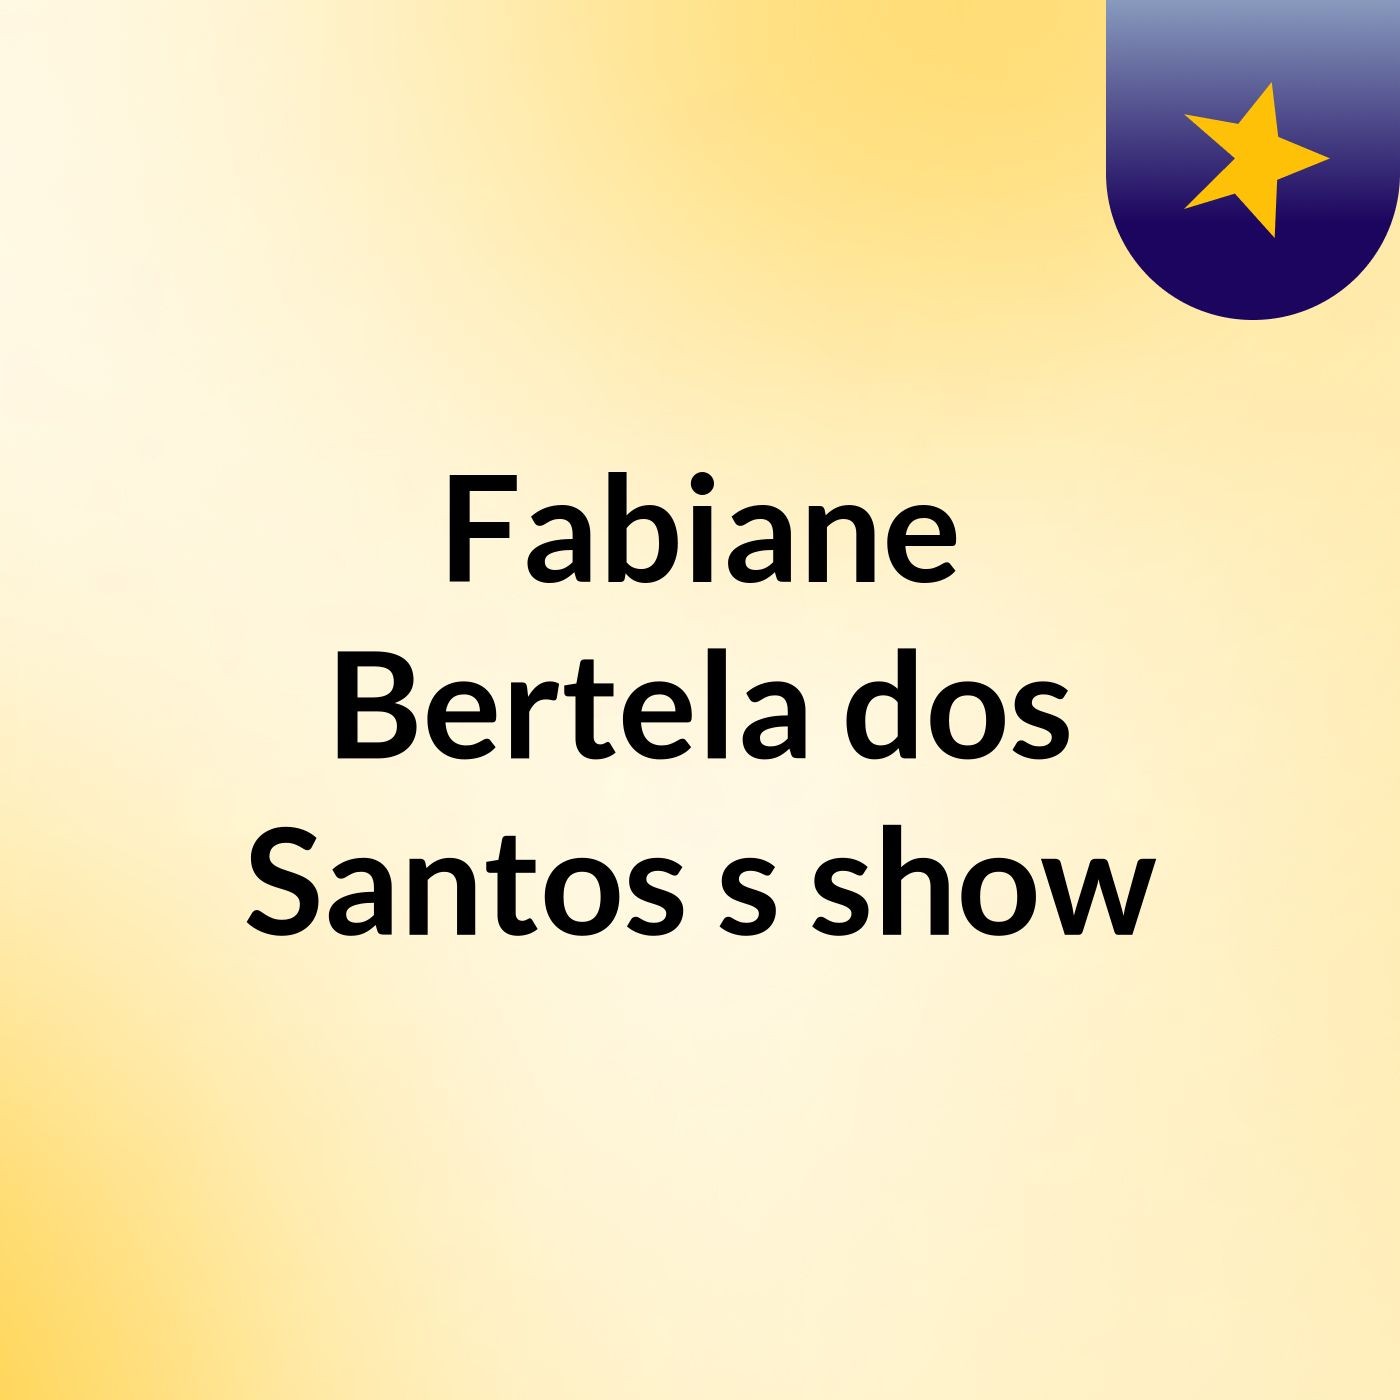 Fabiane Bertela dos Santos's show